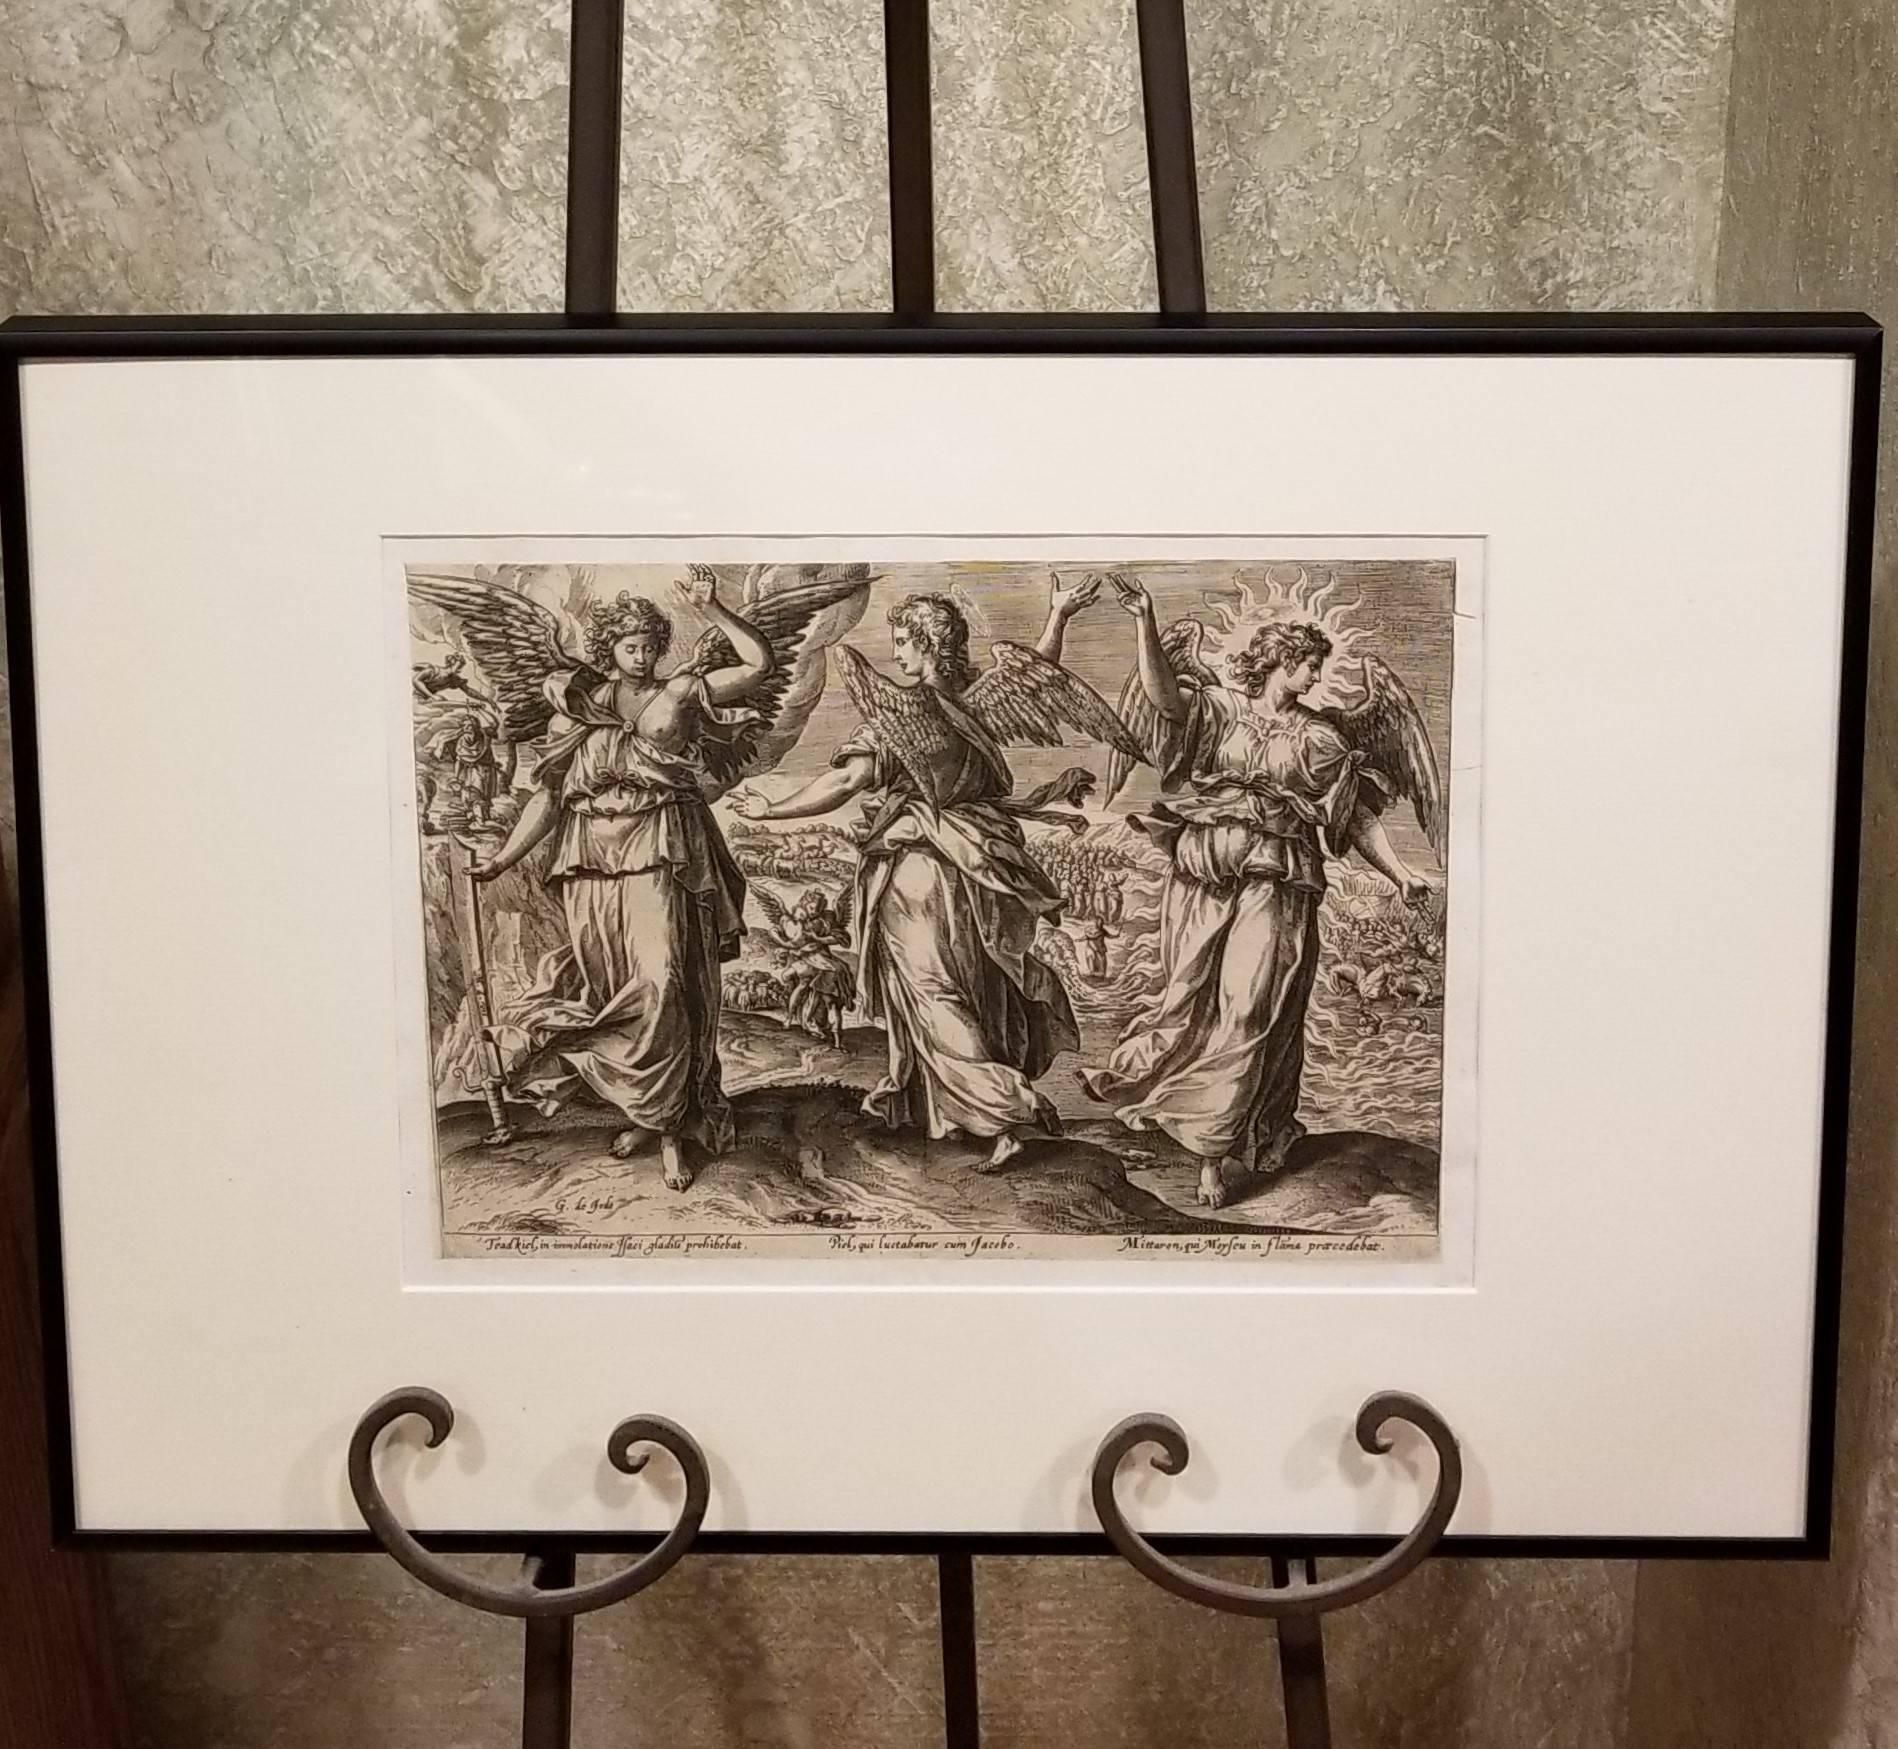 Angels - Framed Set of 2 Engravings - Old Master Engraving after Maerten de Vos 1